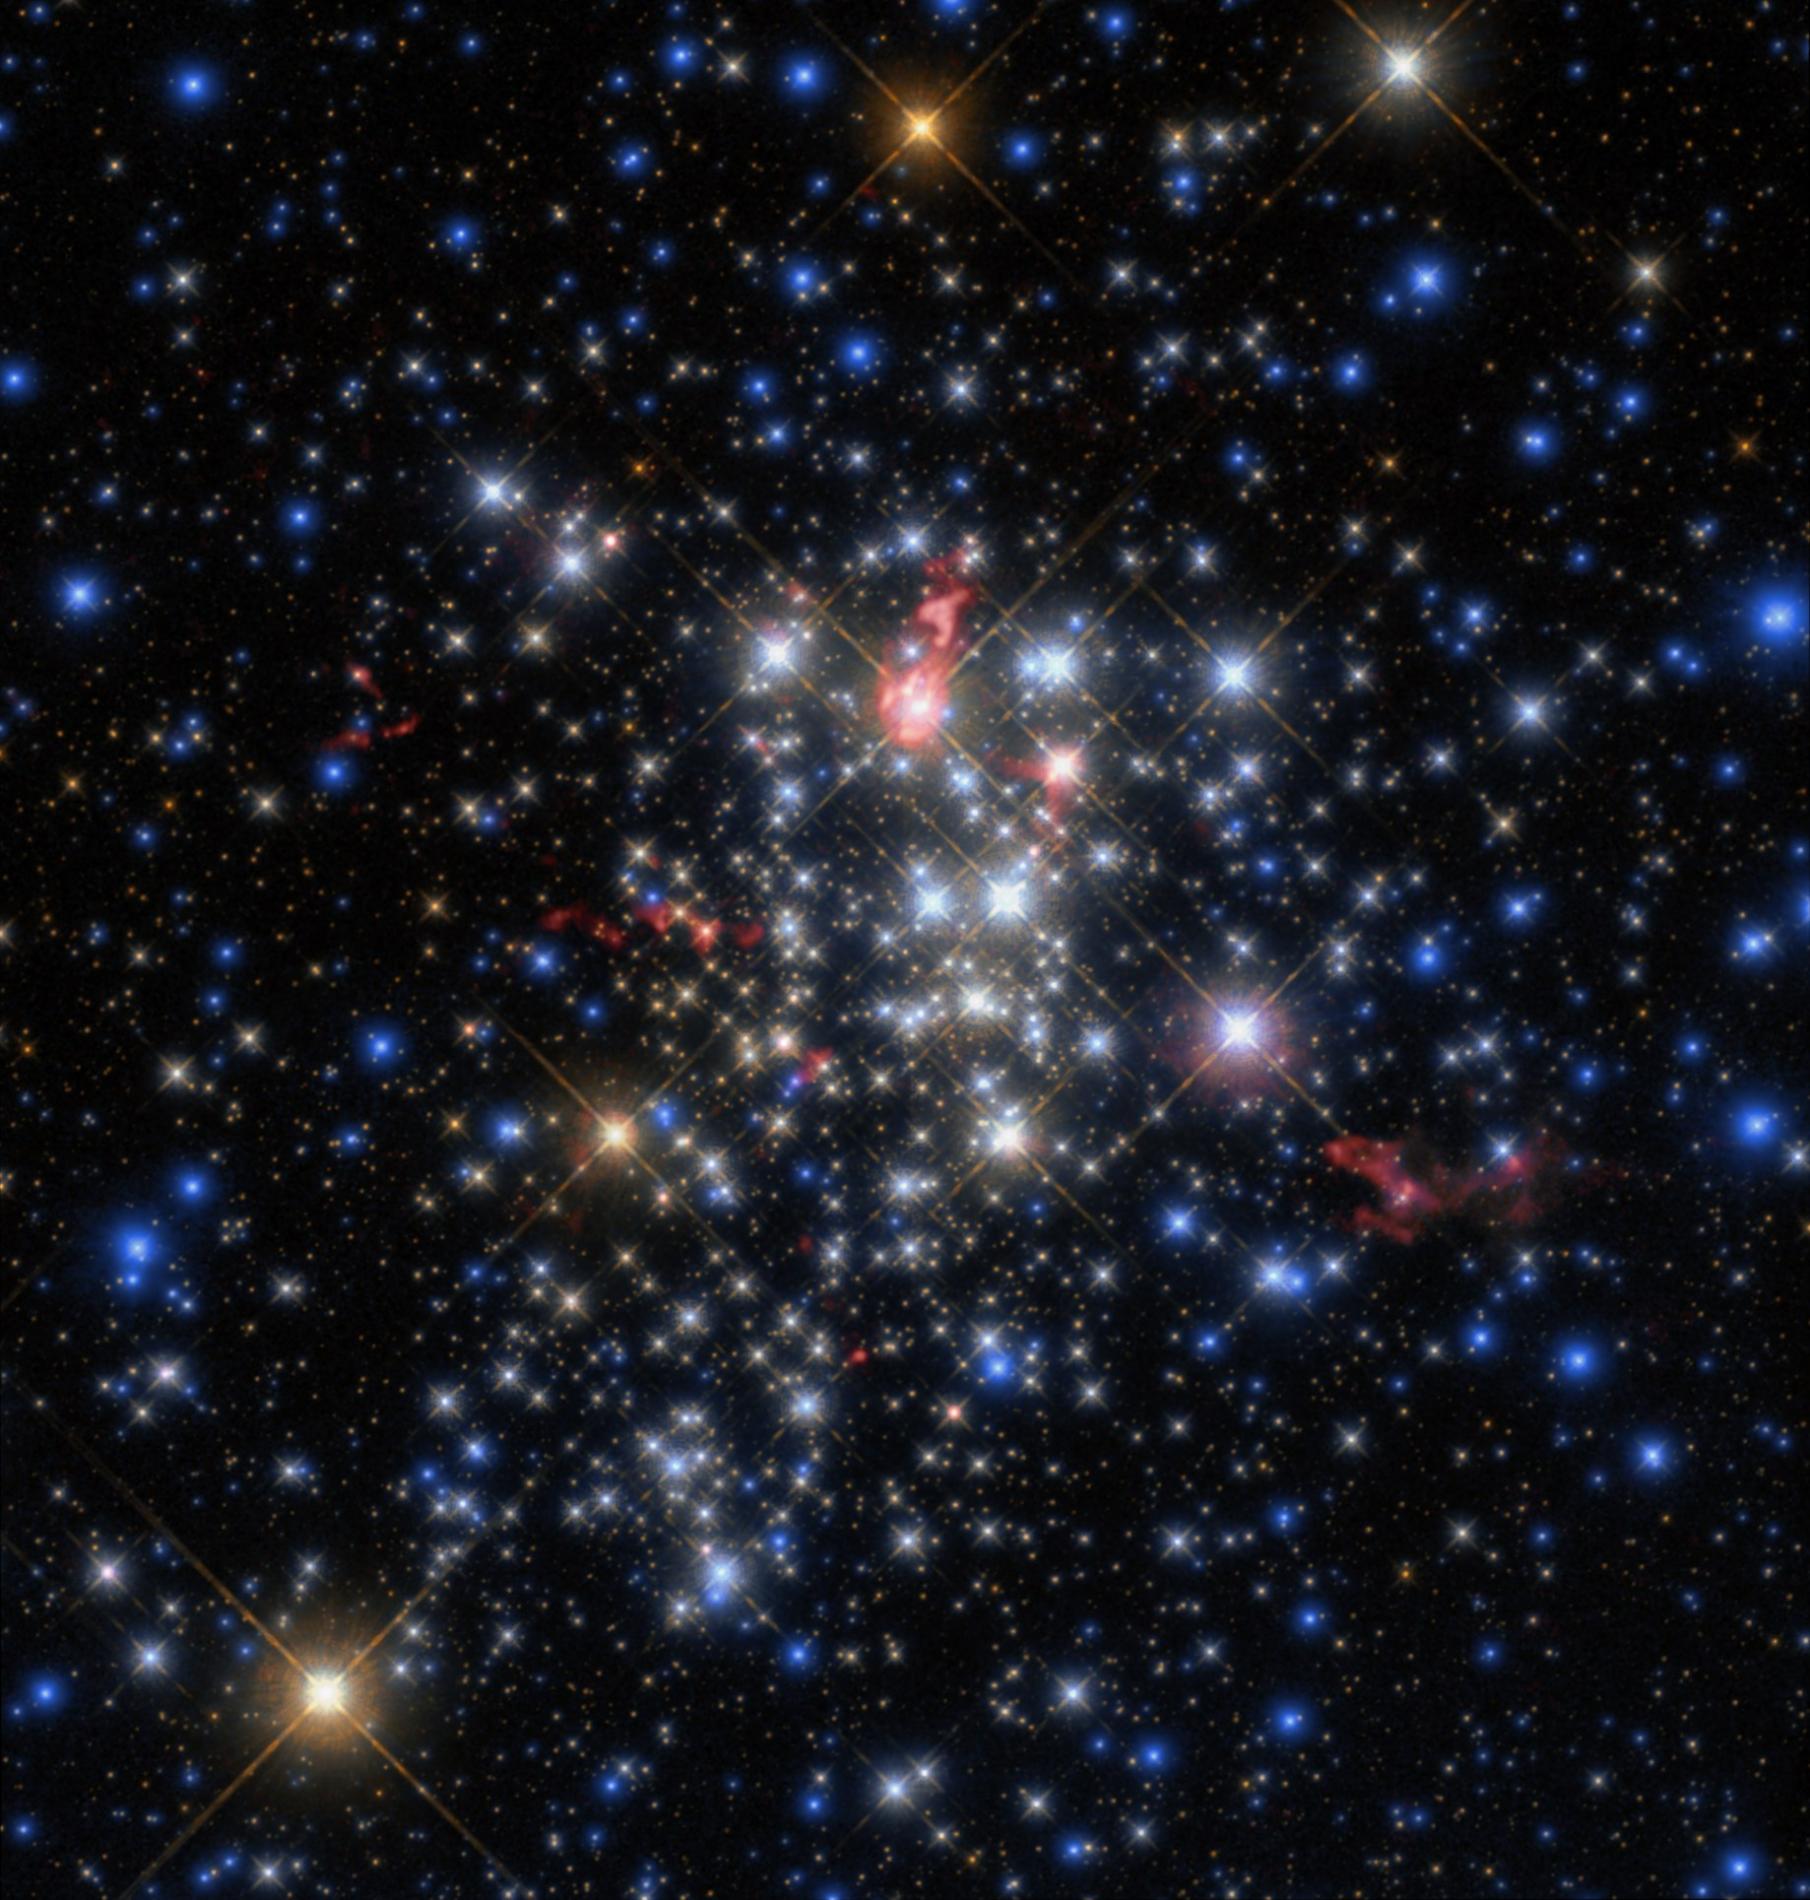 El cúmulo Westerlund 1: un vivero de estrellas gigantes que emerge de las tinieblas | Instituto de Astrofísica de Andalucía - CSIC